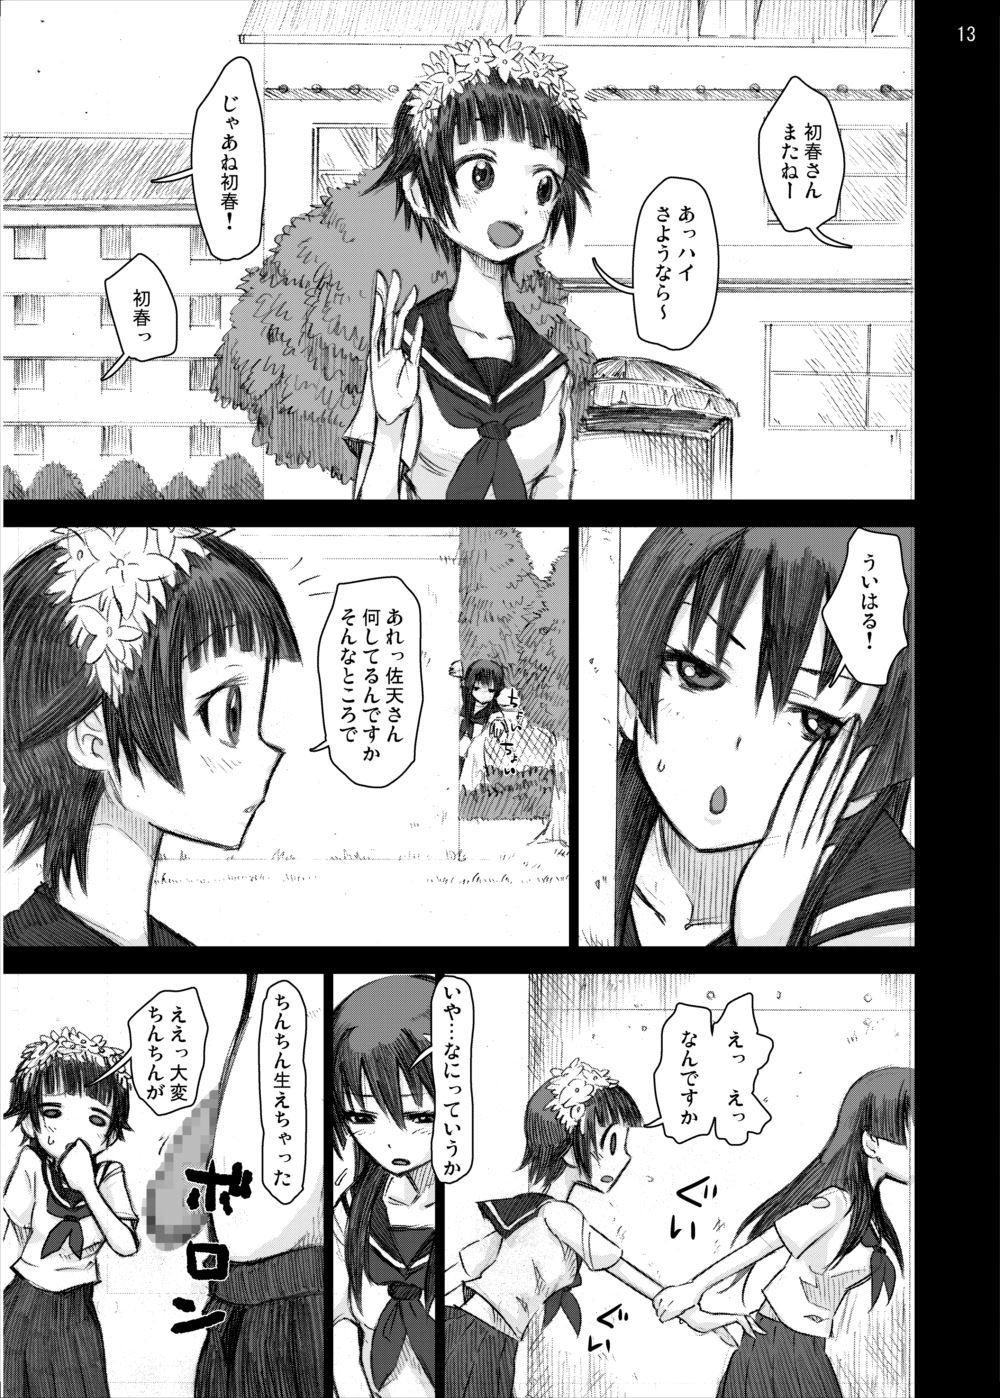 Flashing Ryoujoku Jigoku 4 - Futanari Stalker Rape... - Toaru kagaku no railgun Bikini - Page 12